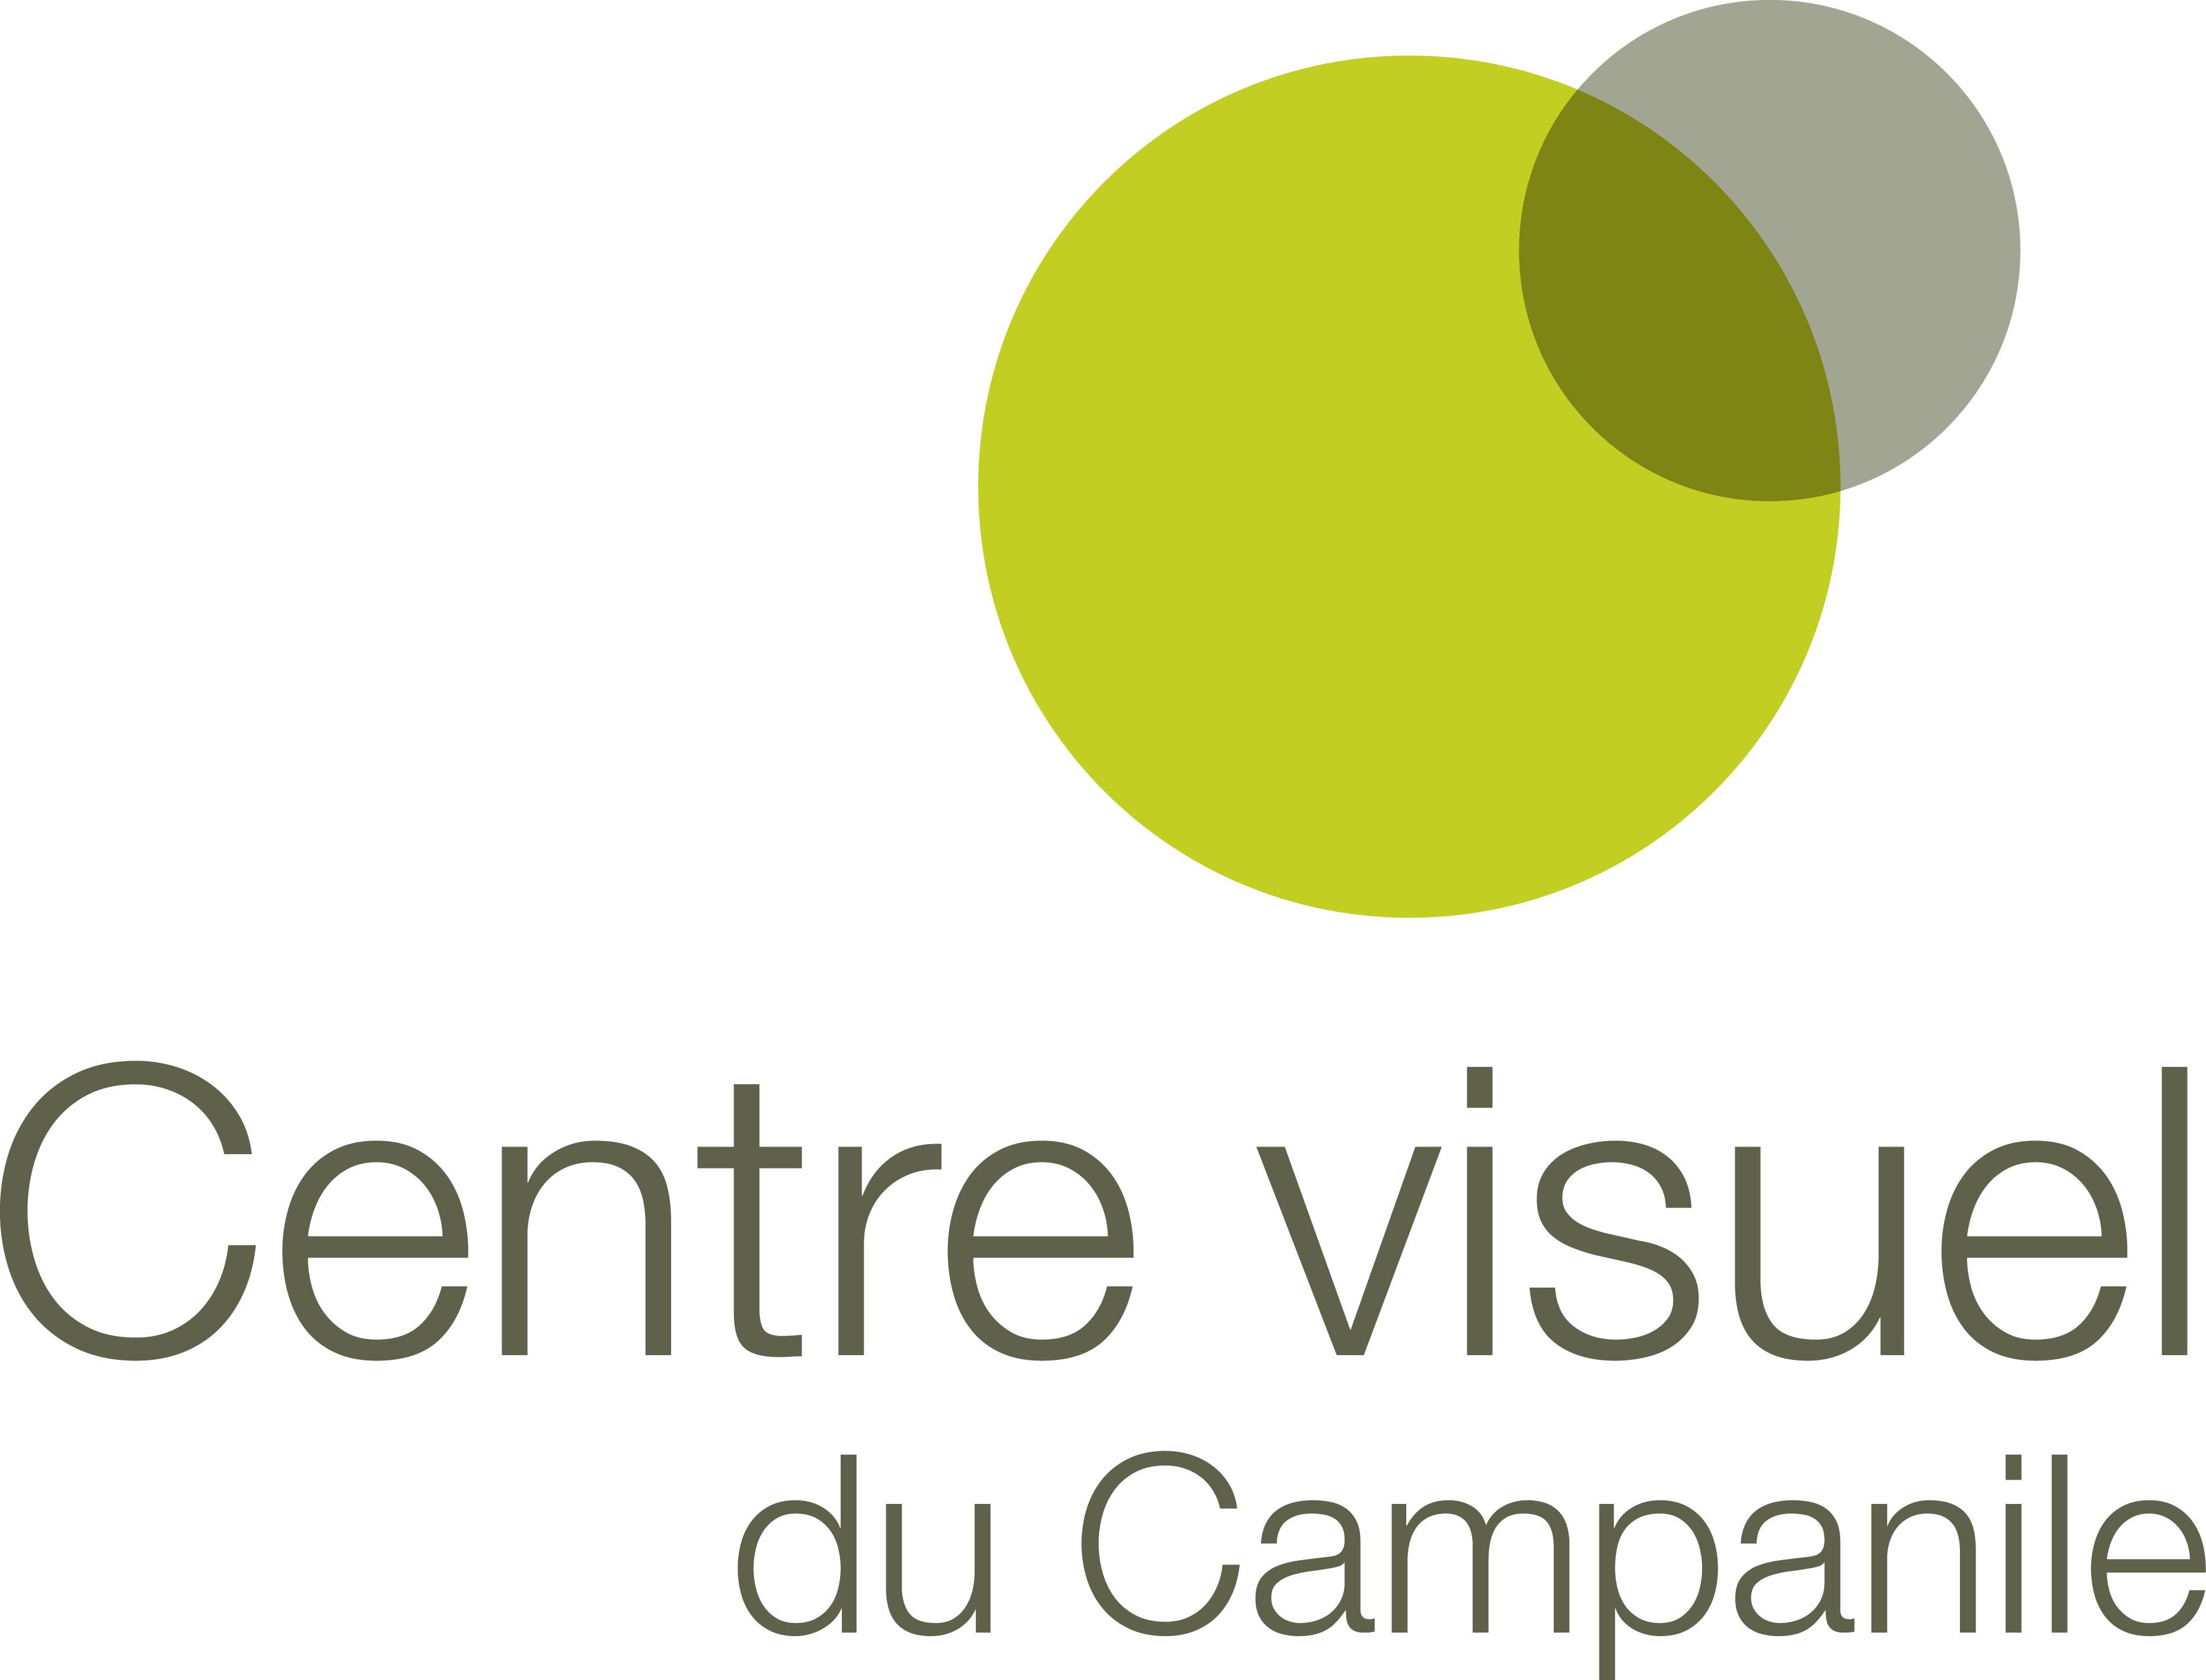 Centre Visuel du Campanile